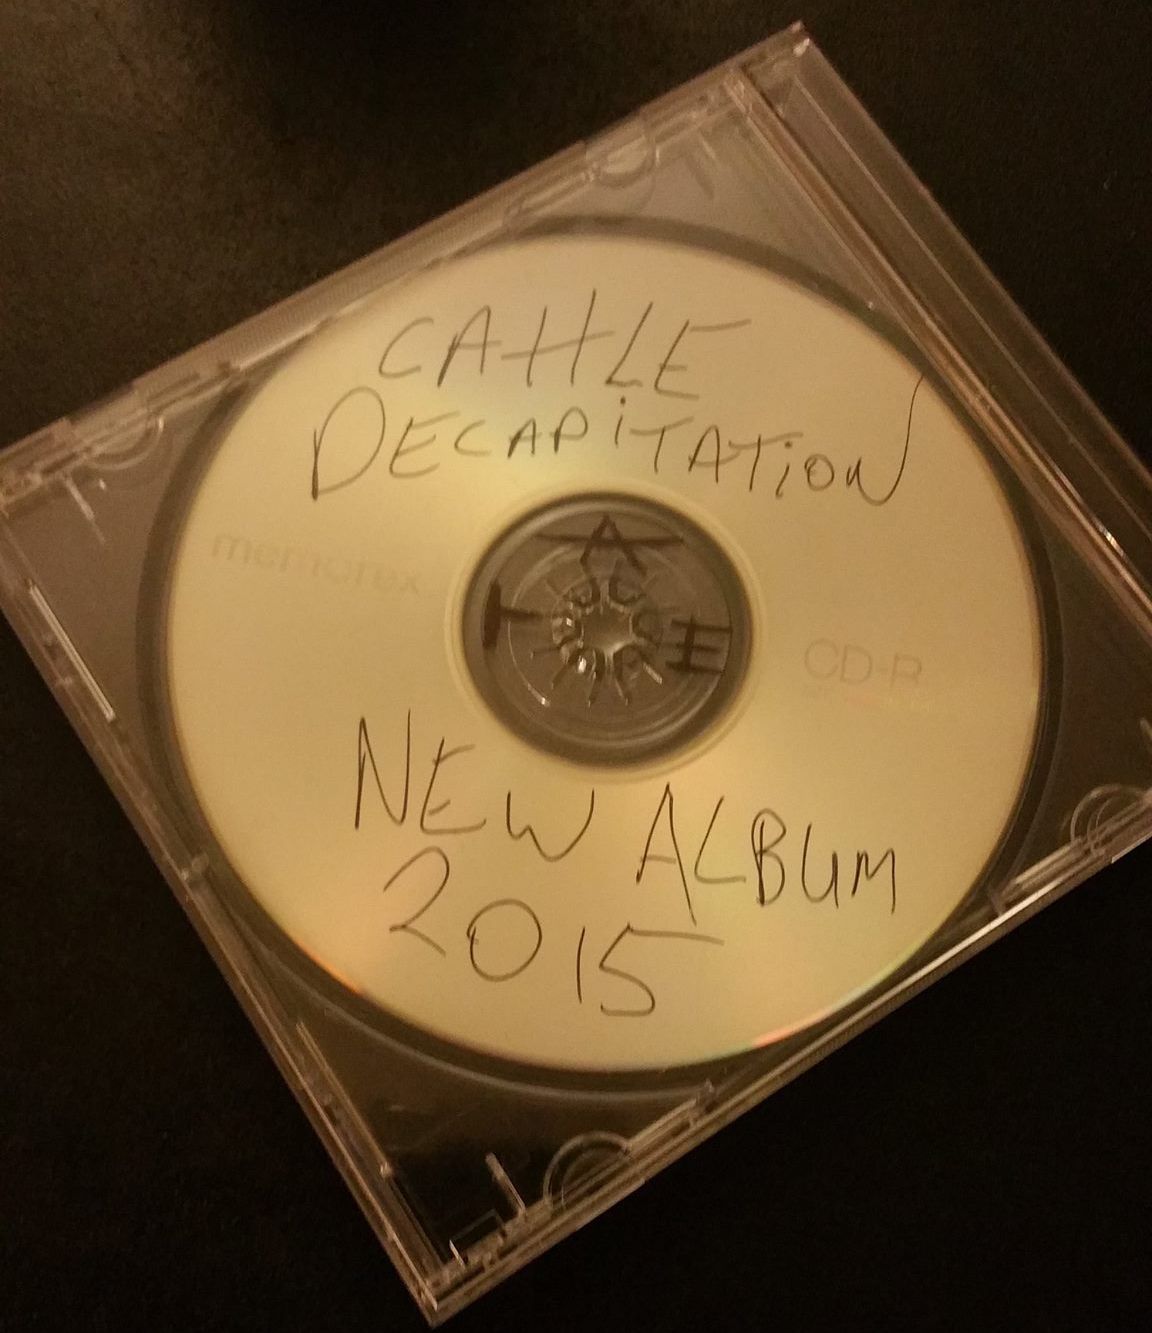 Cattle Decapitation - new album